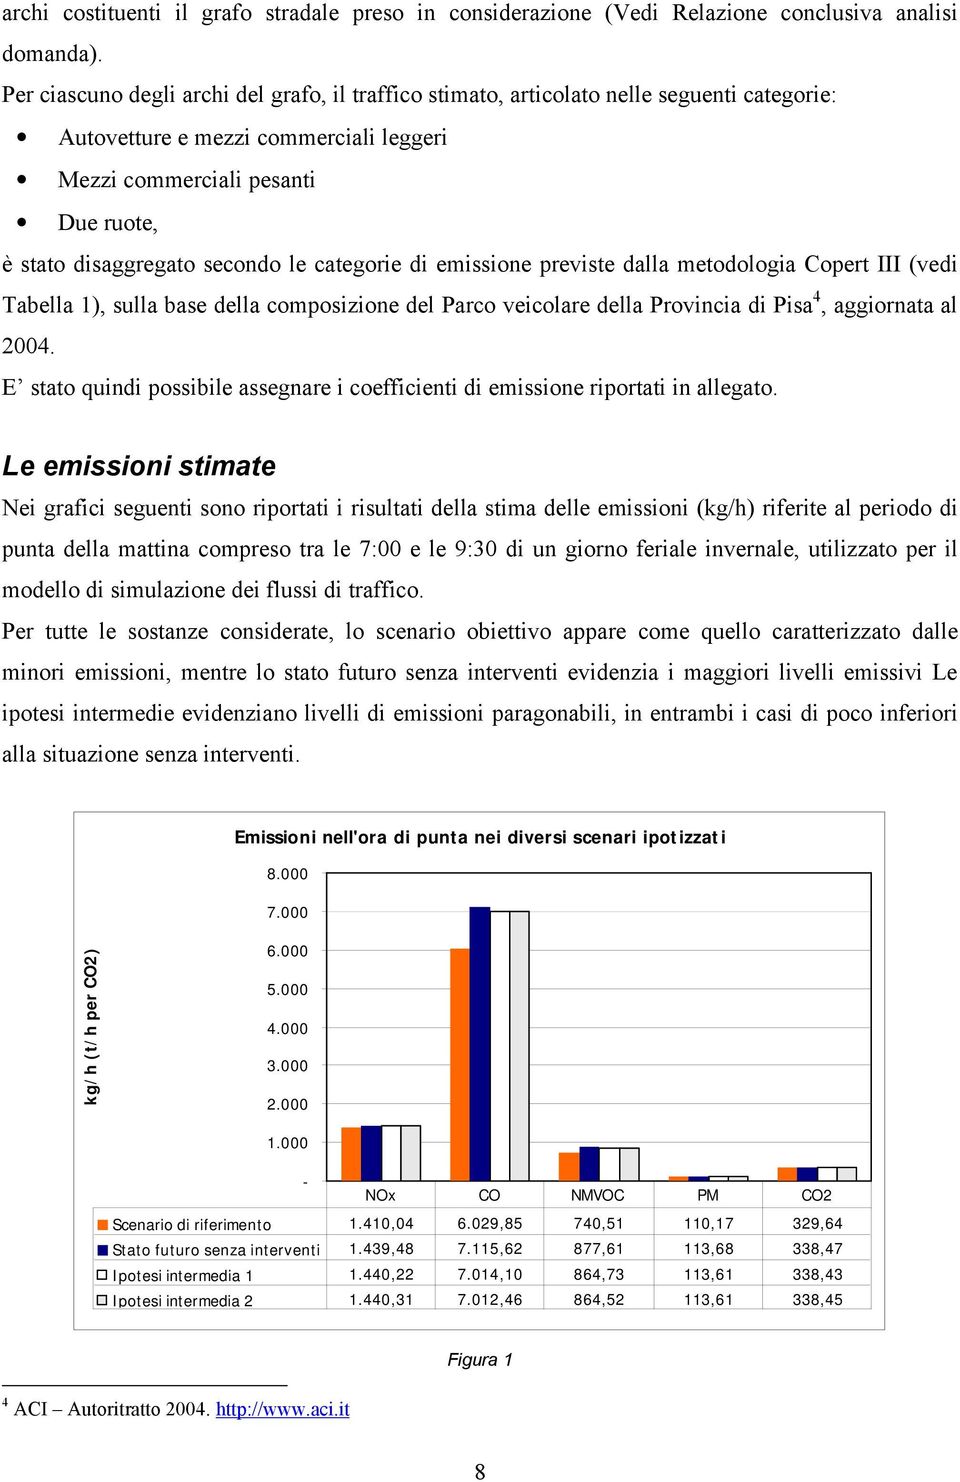 le categorie di emissione previste dalla metodologia Copert III (vedi Tabella 1), sulla base della composizione del Parco veicolare della Provincia di Pisa 4, aggiornata al 2004.